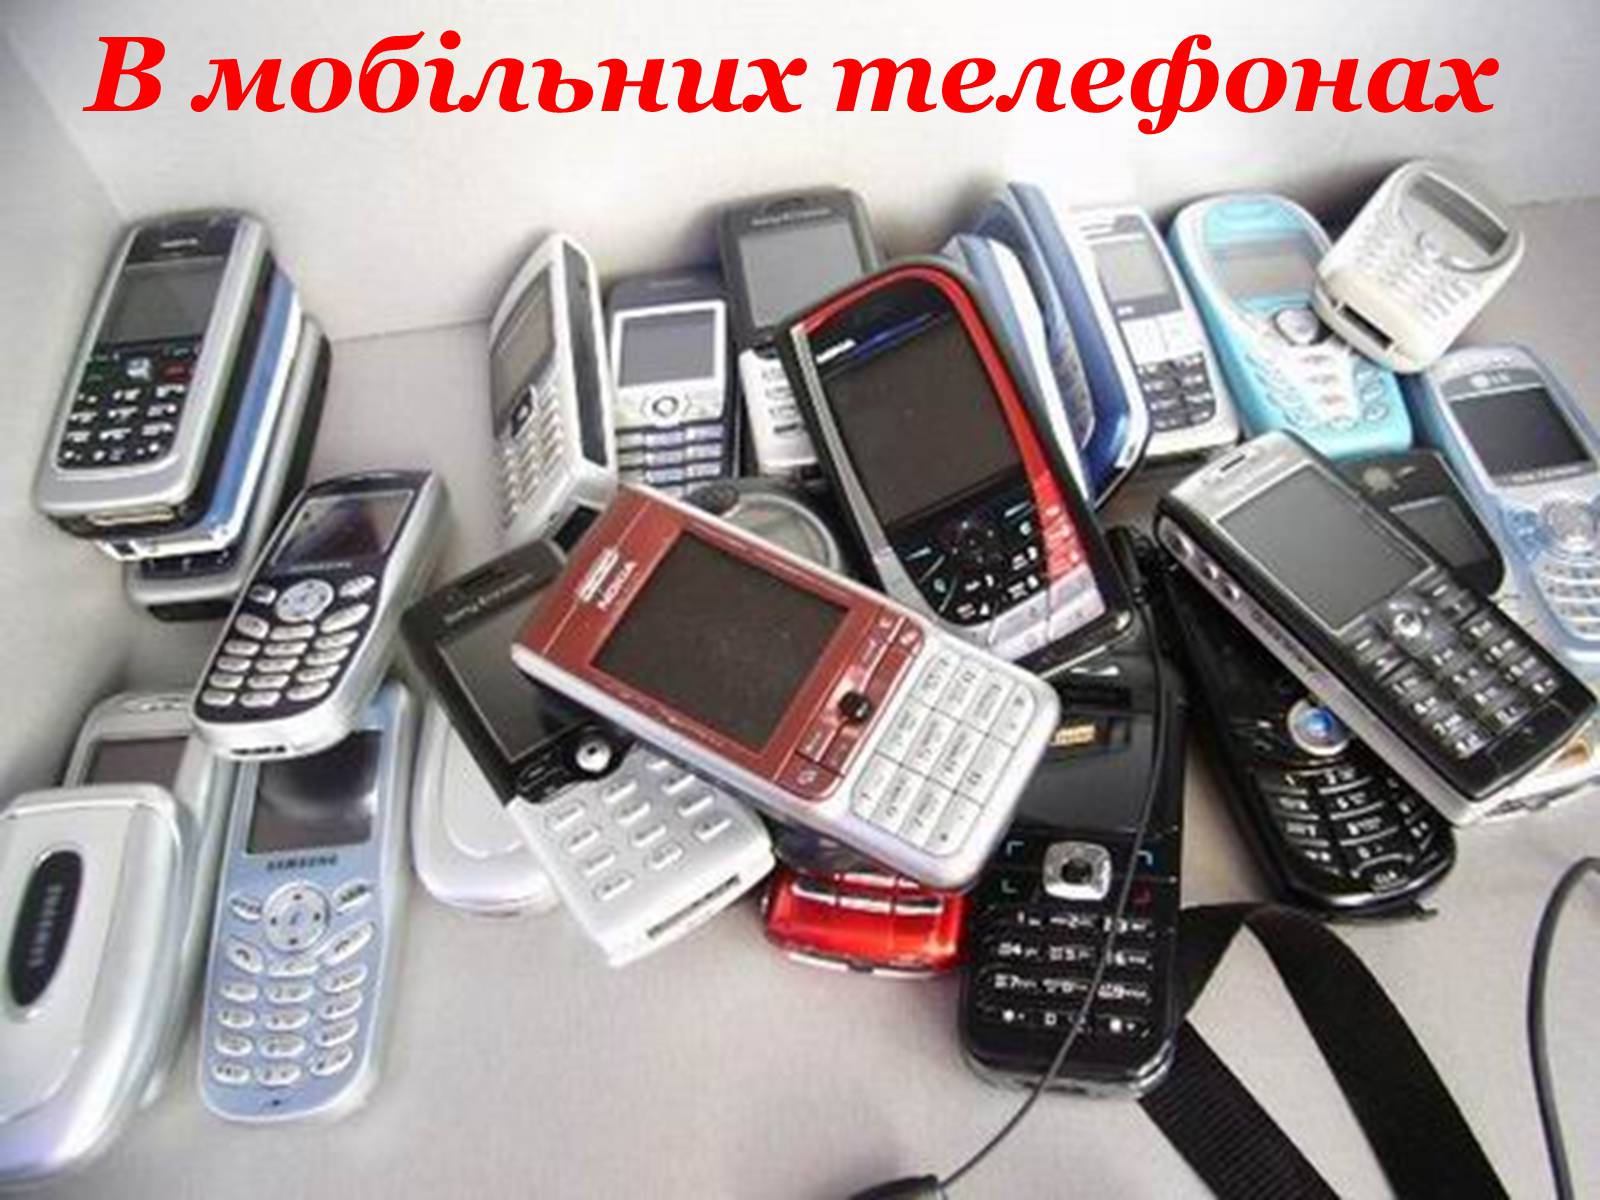 Можно ли сдать старый телефон. Много старых смартфонов. Много телефонов. Куча старых телефонов. Рынок телефонов.